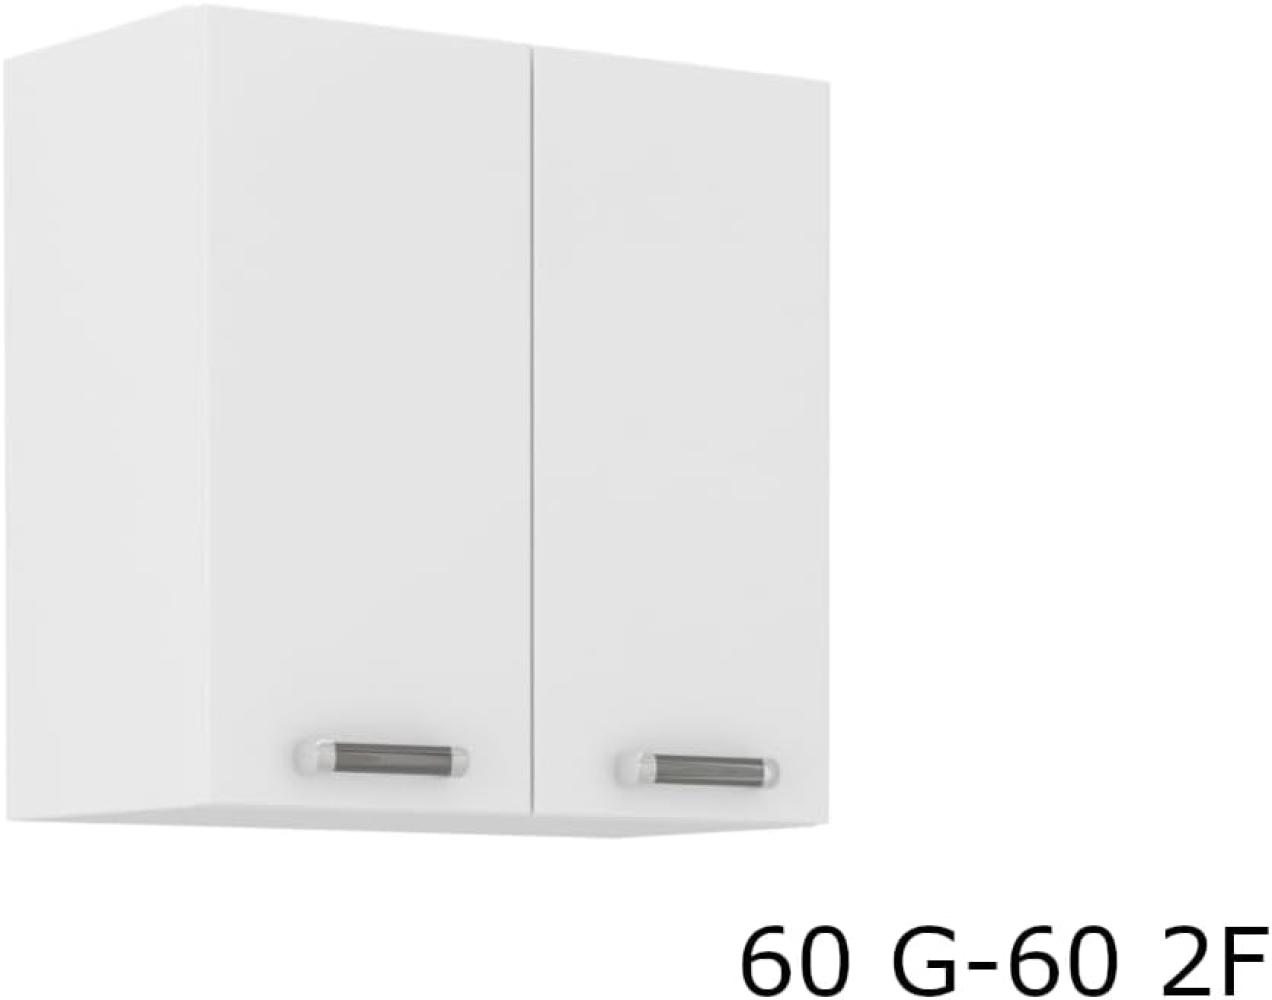 Zweitüriger Küchenoberschrank EPSILON 60 G-60 2F, 60x60x31, weiß Bild 1